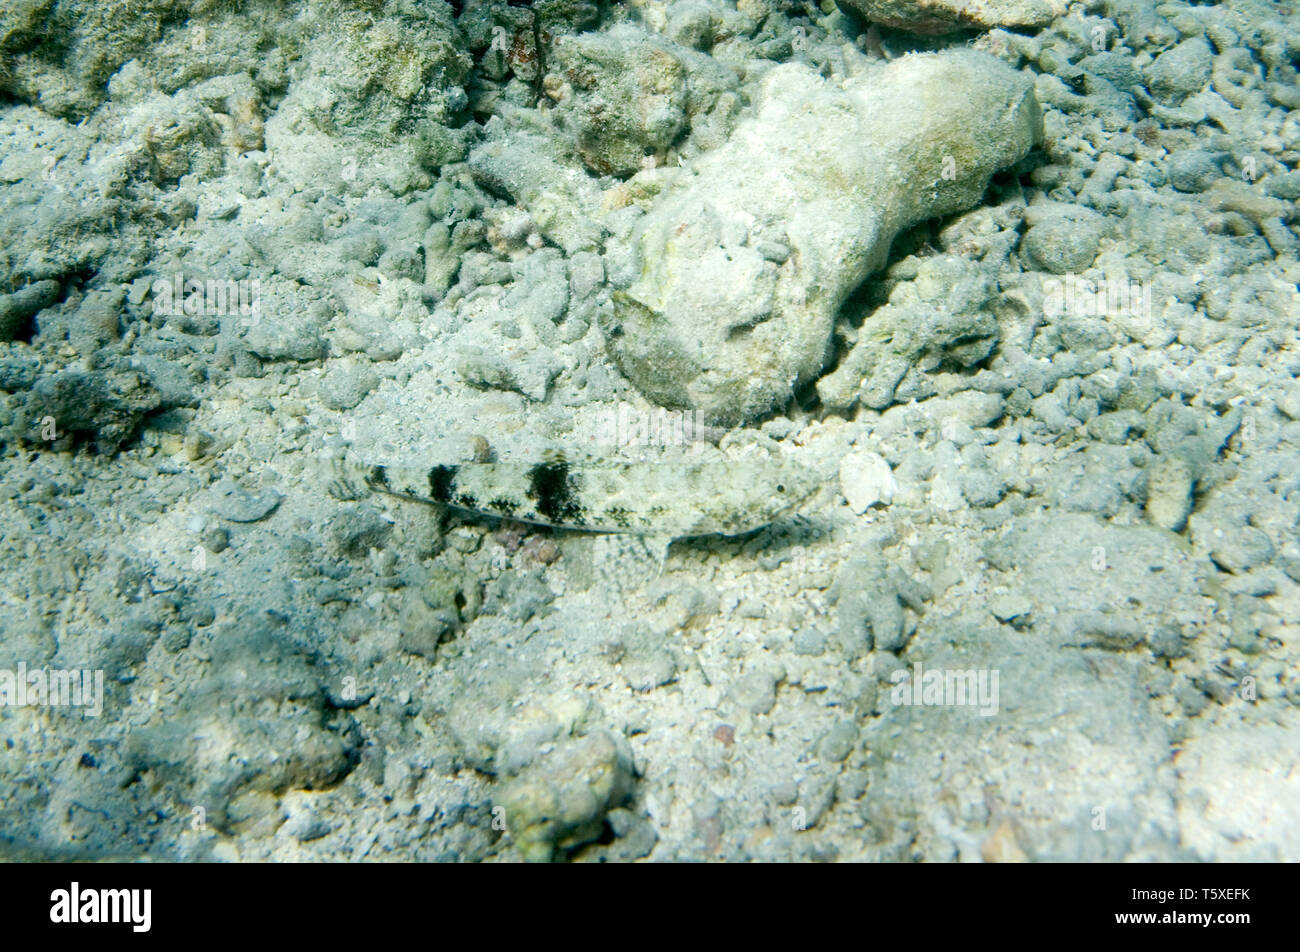 Chiazzato sandperch. Parapercis hexophthalma. La vita subacquea del Mar Rosso in Egitto. I pesci di acqua salata e Coral reef di Colonia Foto Stock